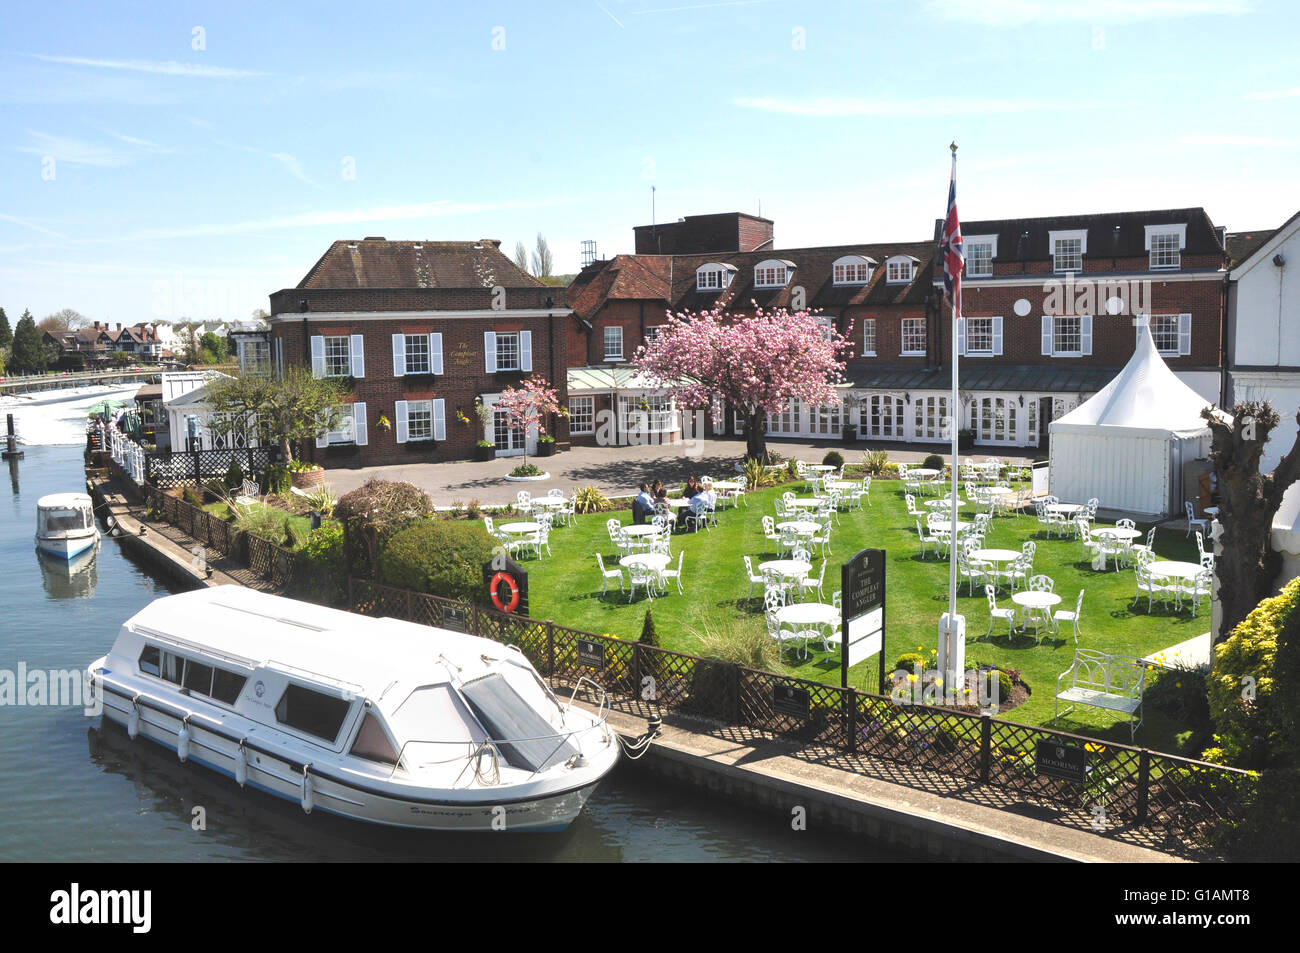 - Bucks Marlow on Thames - The Complete Angler riverside hotel - élégance et sophistication - tables sur la pelouse - printemps Banque D'Images